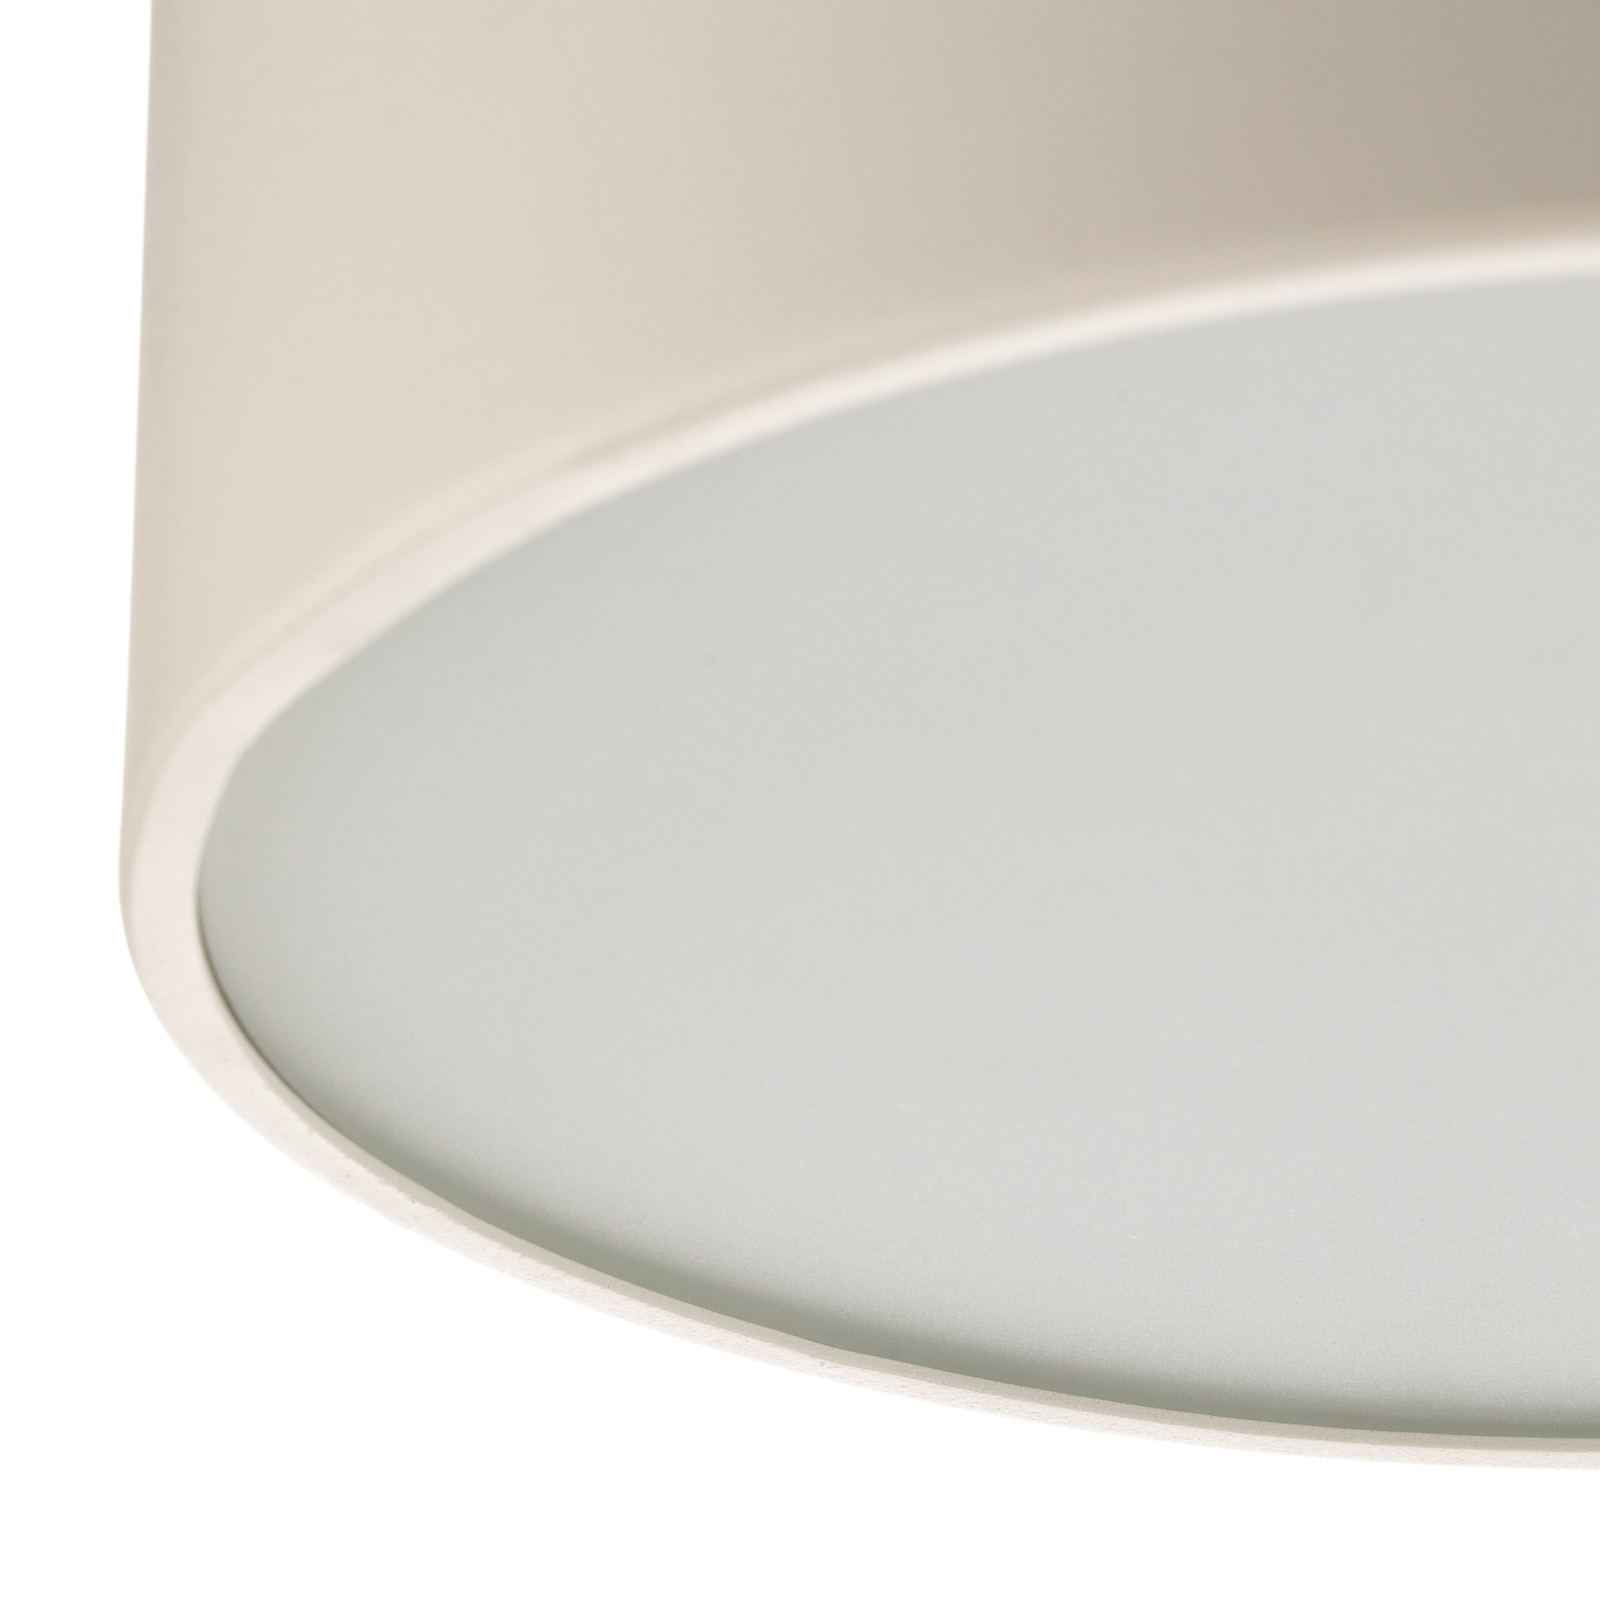 Dayton ceiling light in white Ø 25 cm